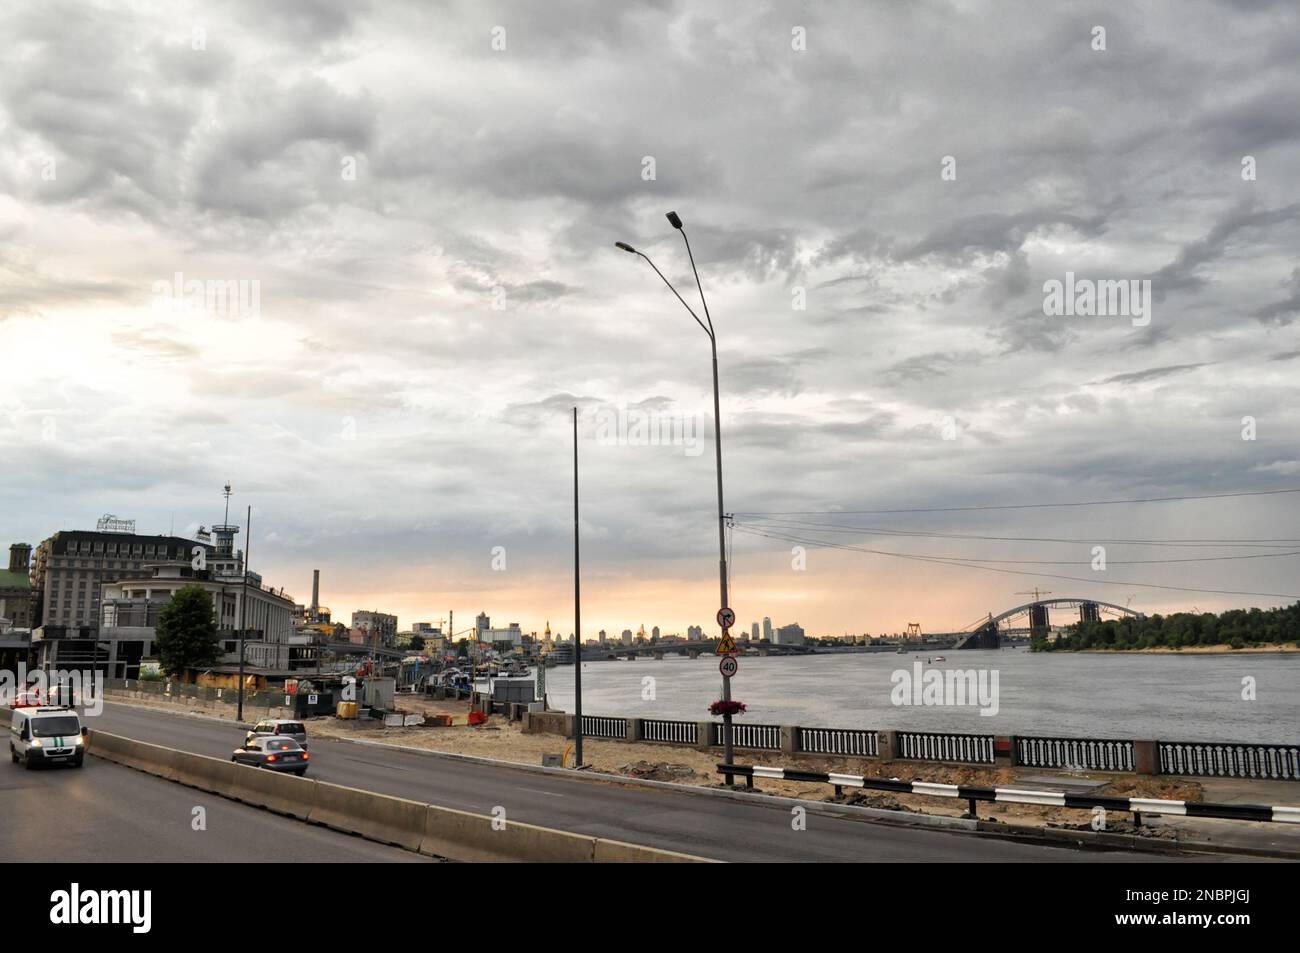 Kiev, Ucraina. Luglio 19. 2014. Panorama del terrapieno, dell'autostrada e del ponte pedonale di Dnieper. Tempo nuvoloso con cieli spettacolari. Foto Stock